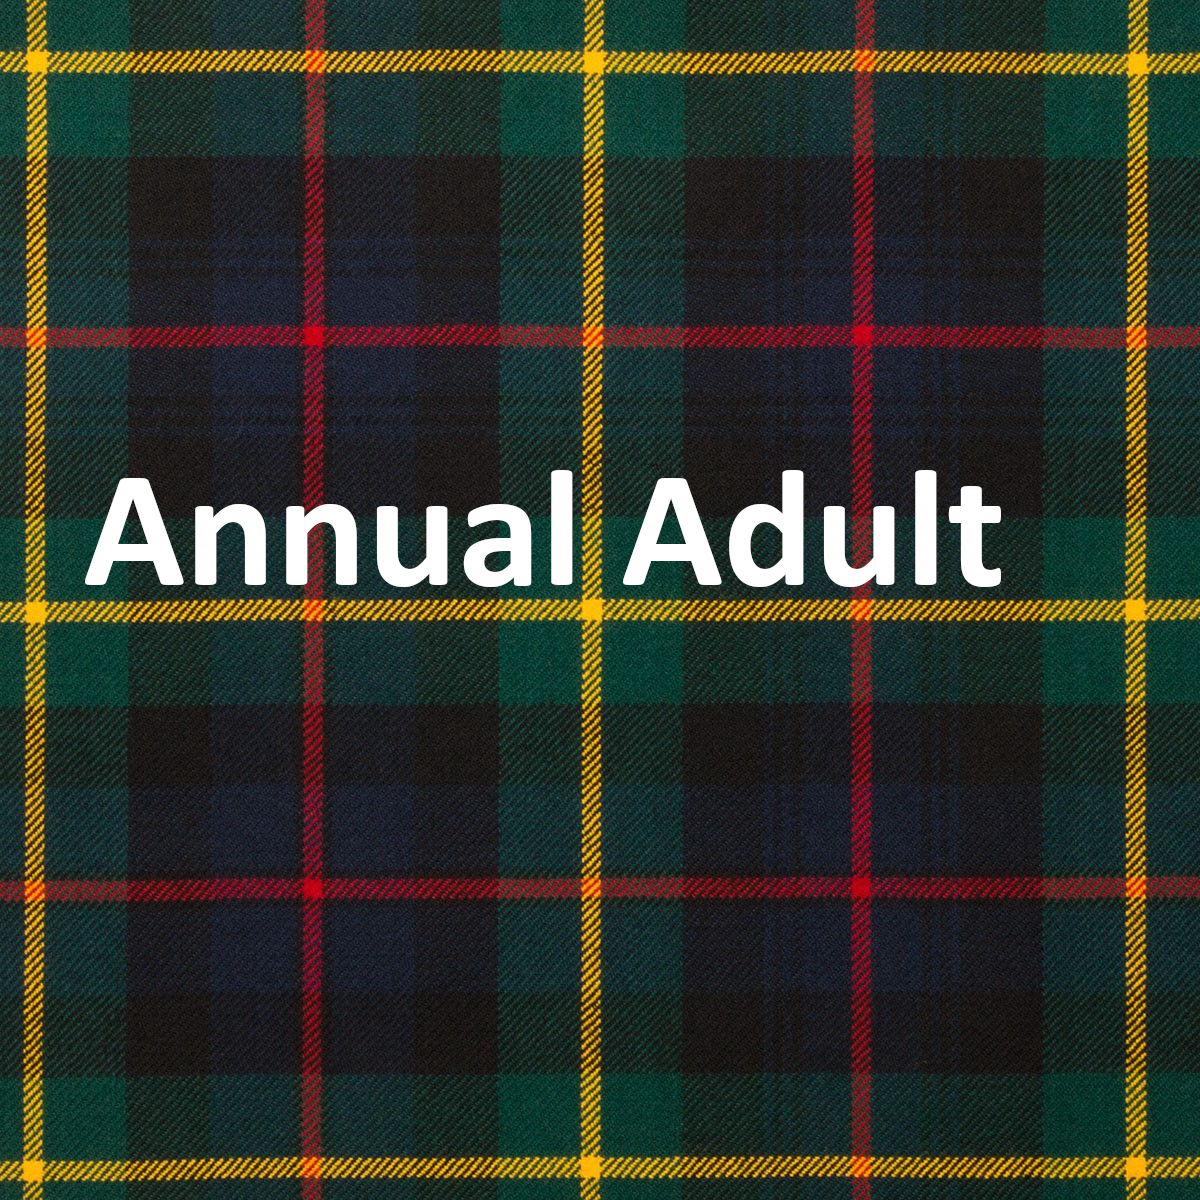 Annual Adult Membership